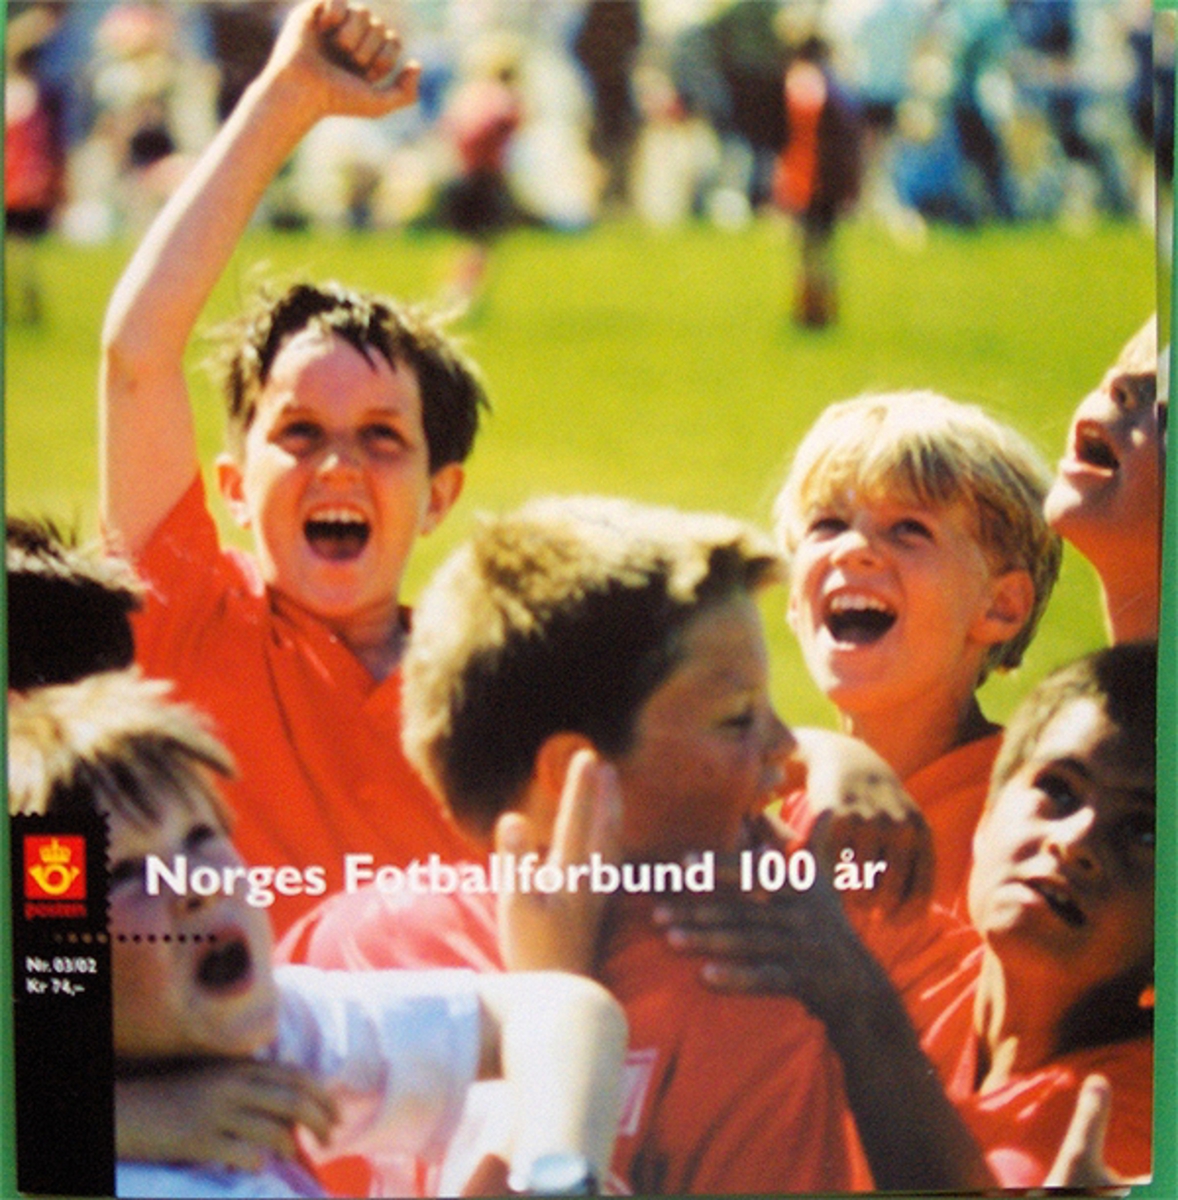 Hefte med førstedagsbrev (frimerker) gitt ut til Norges fotballforbunds 100-årsjubileum i 2002.